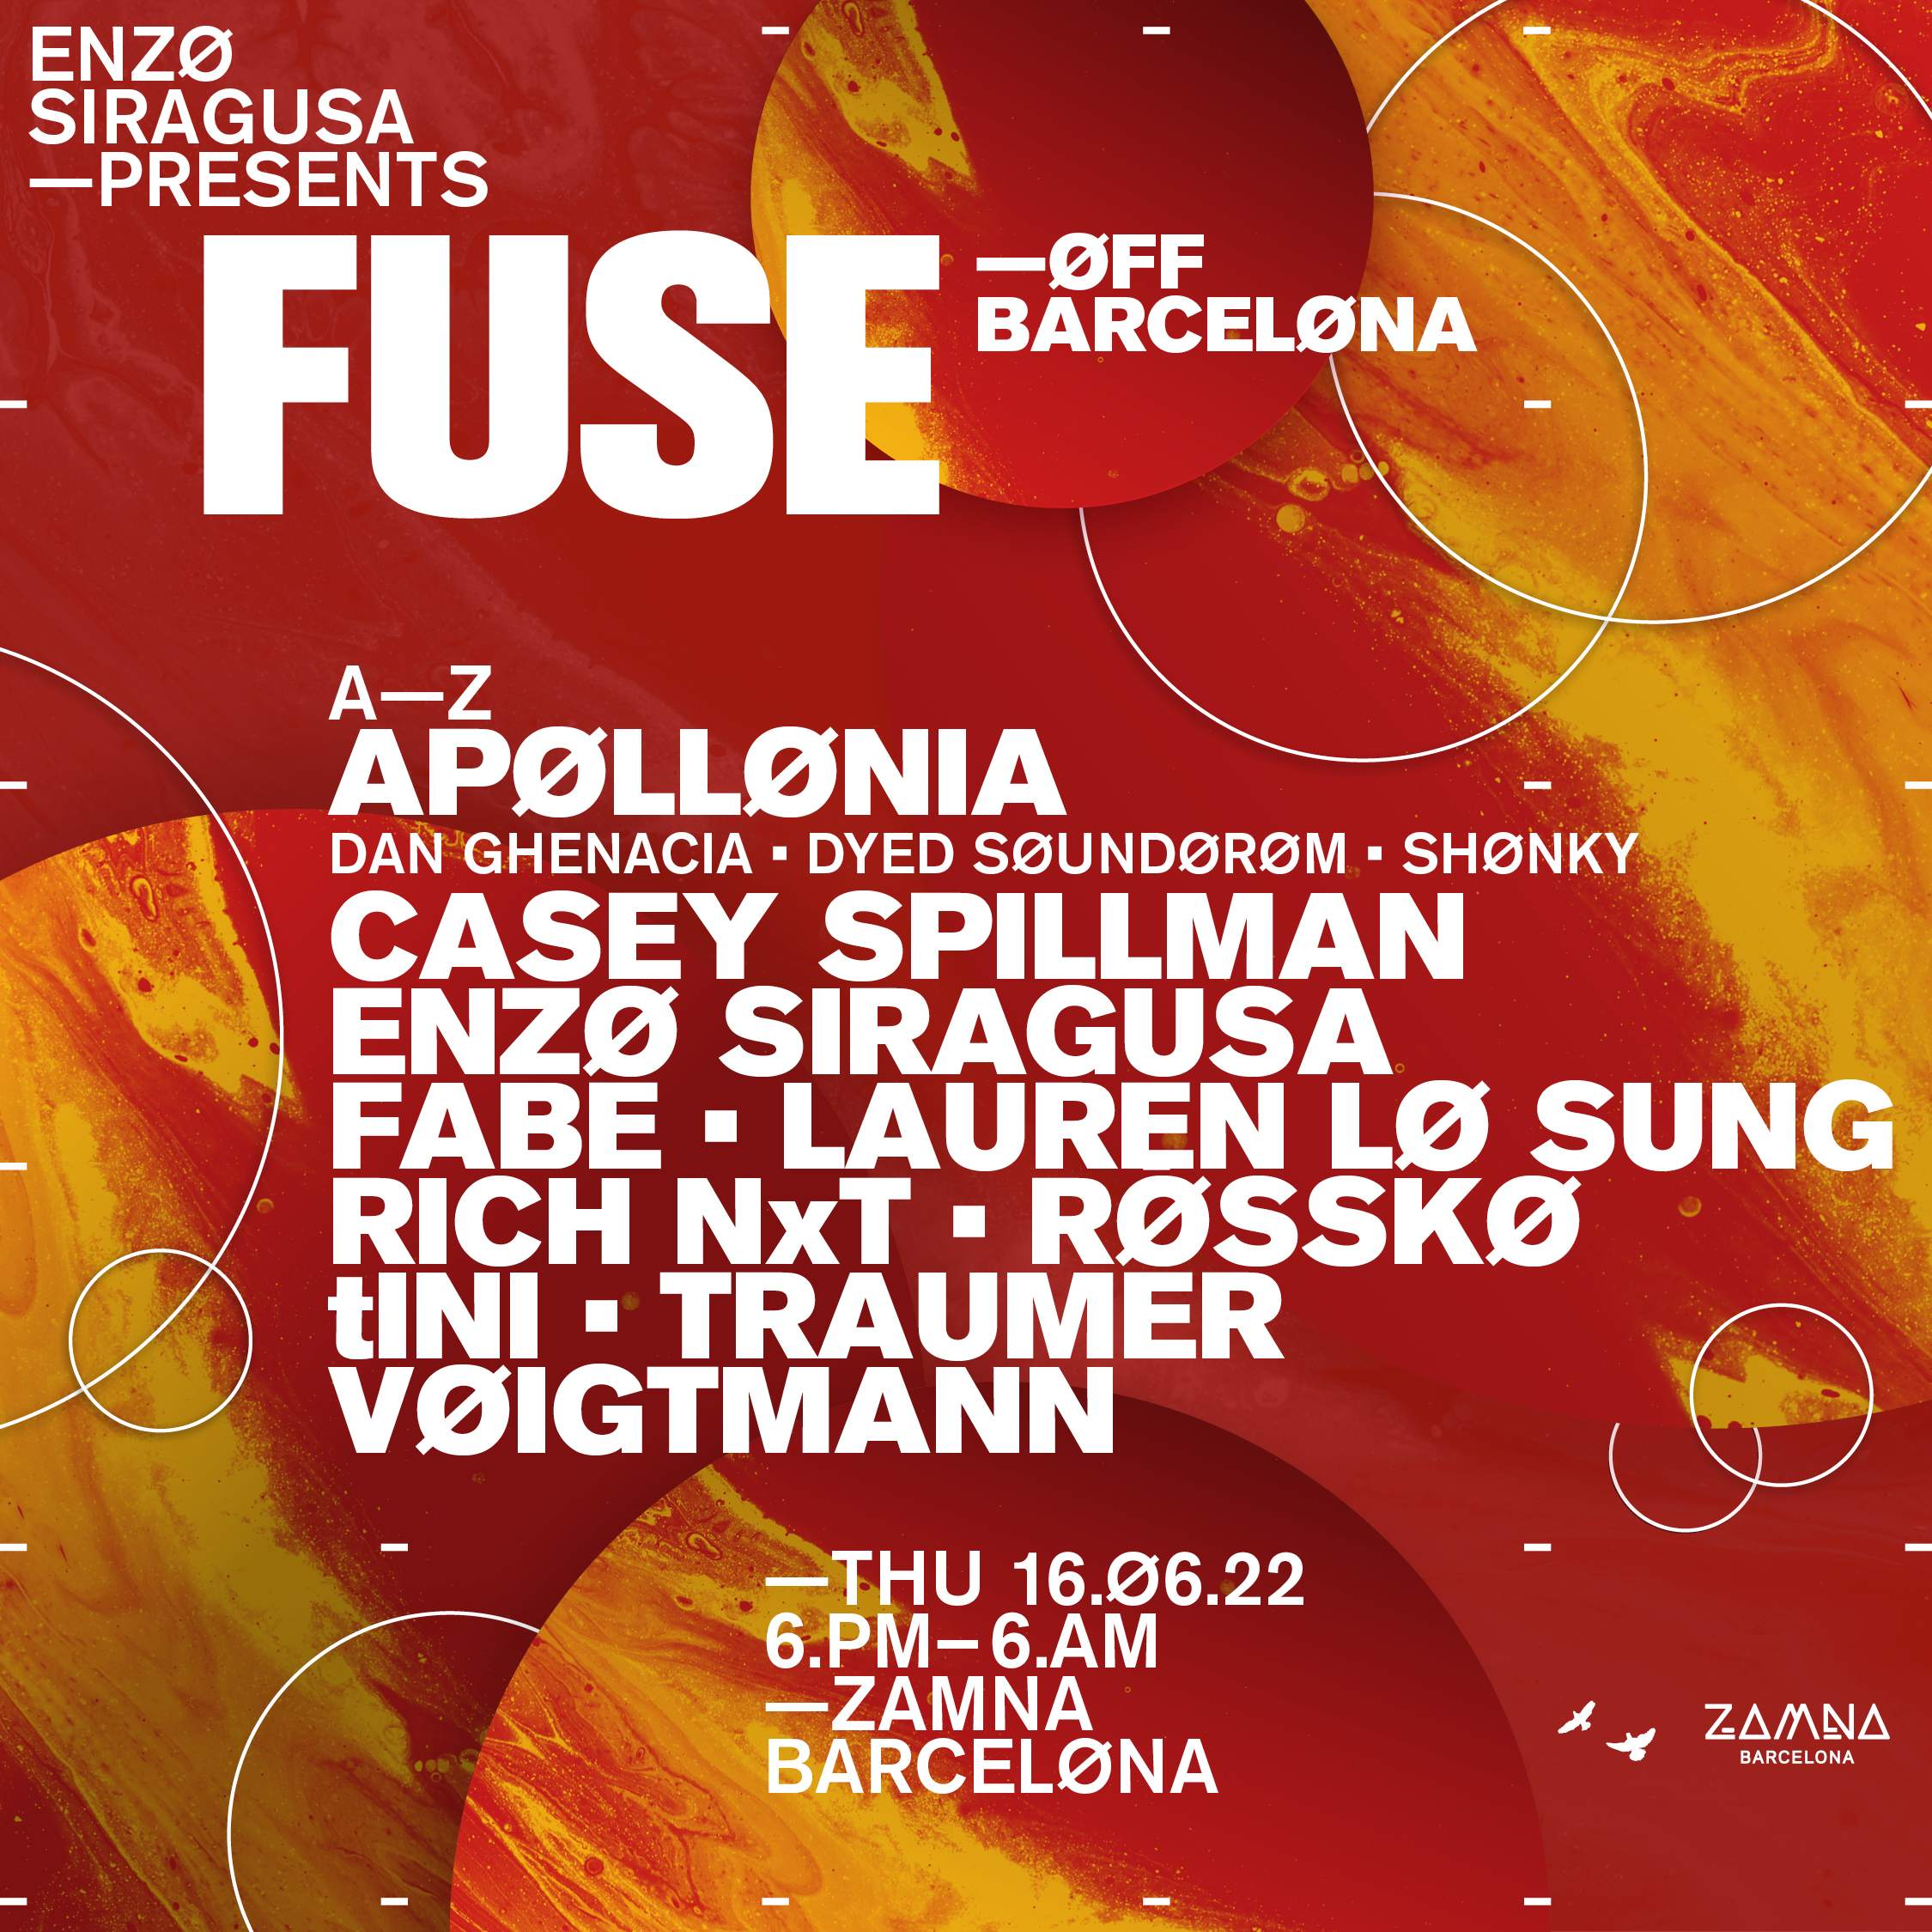 FUSE - Off Barcelona - Página frontal